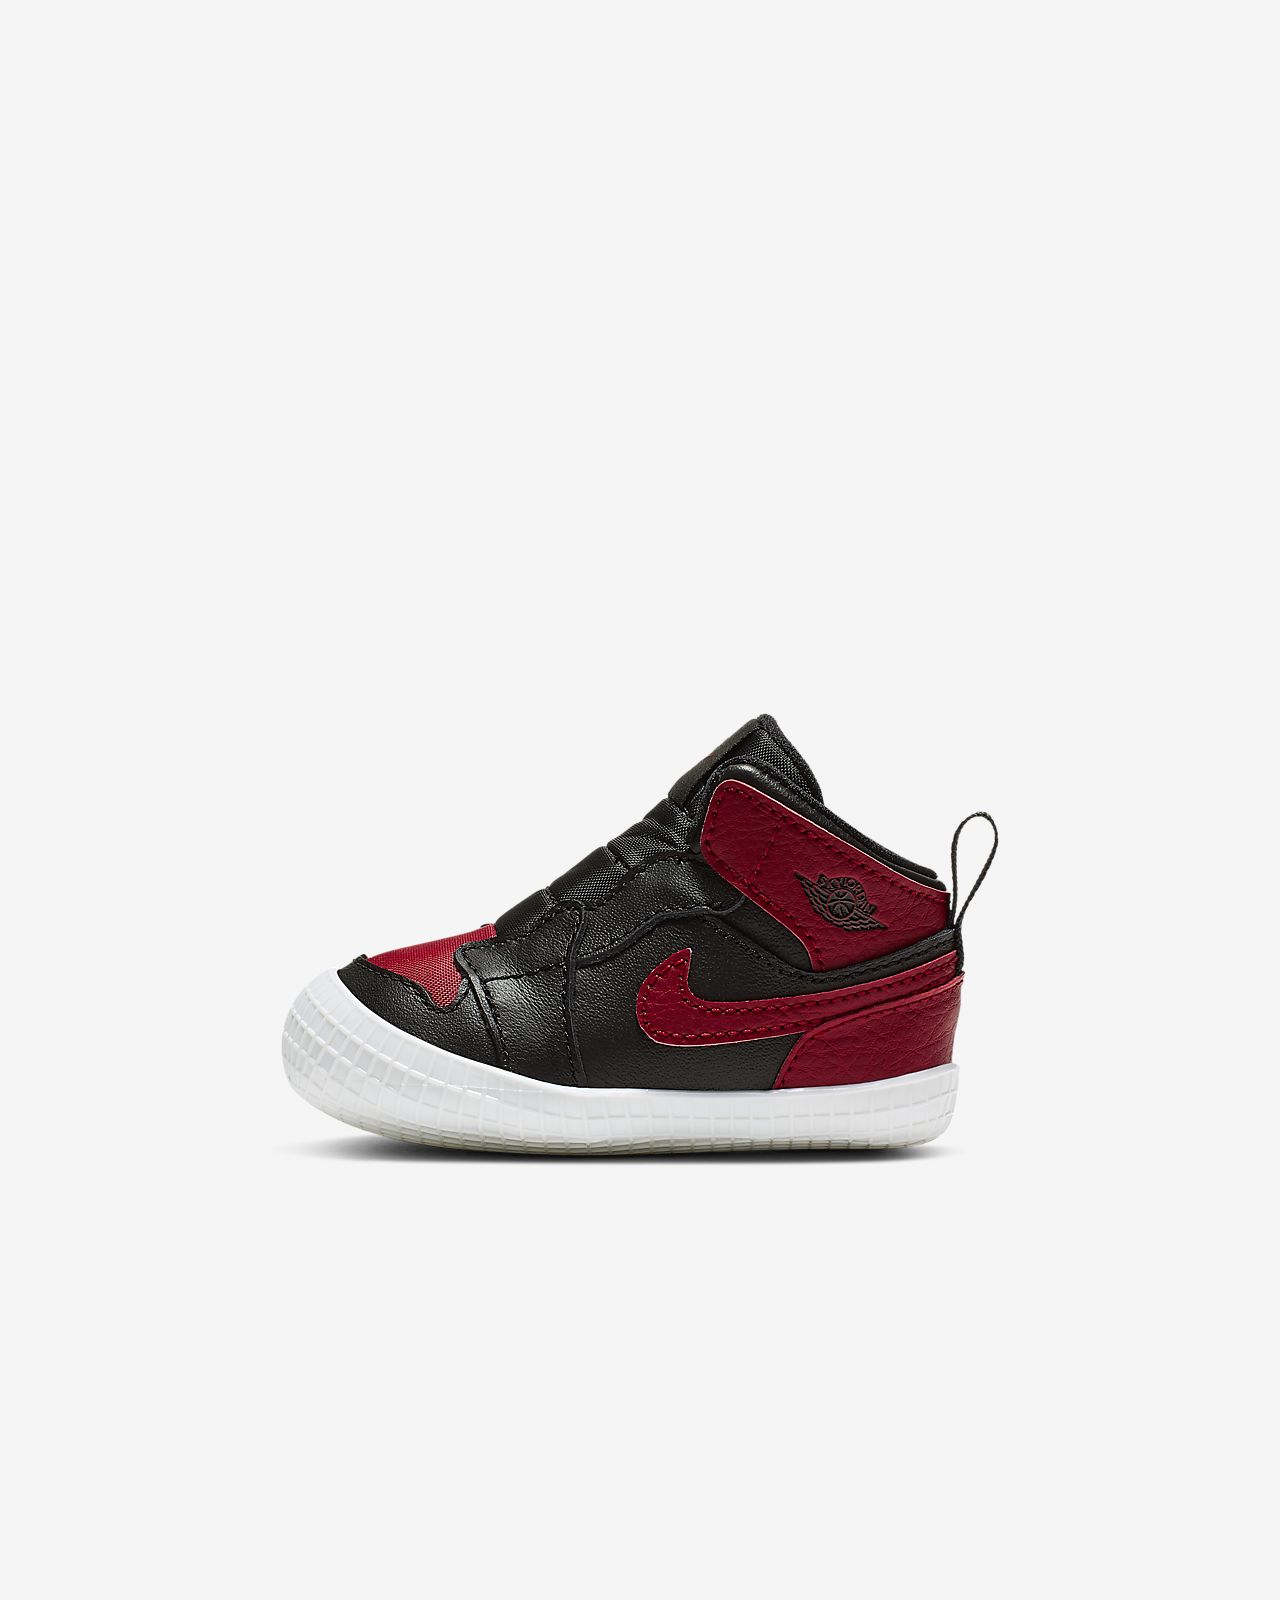 Jordan 1 Baby Cot Bootie. Nike NZ